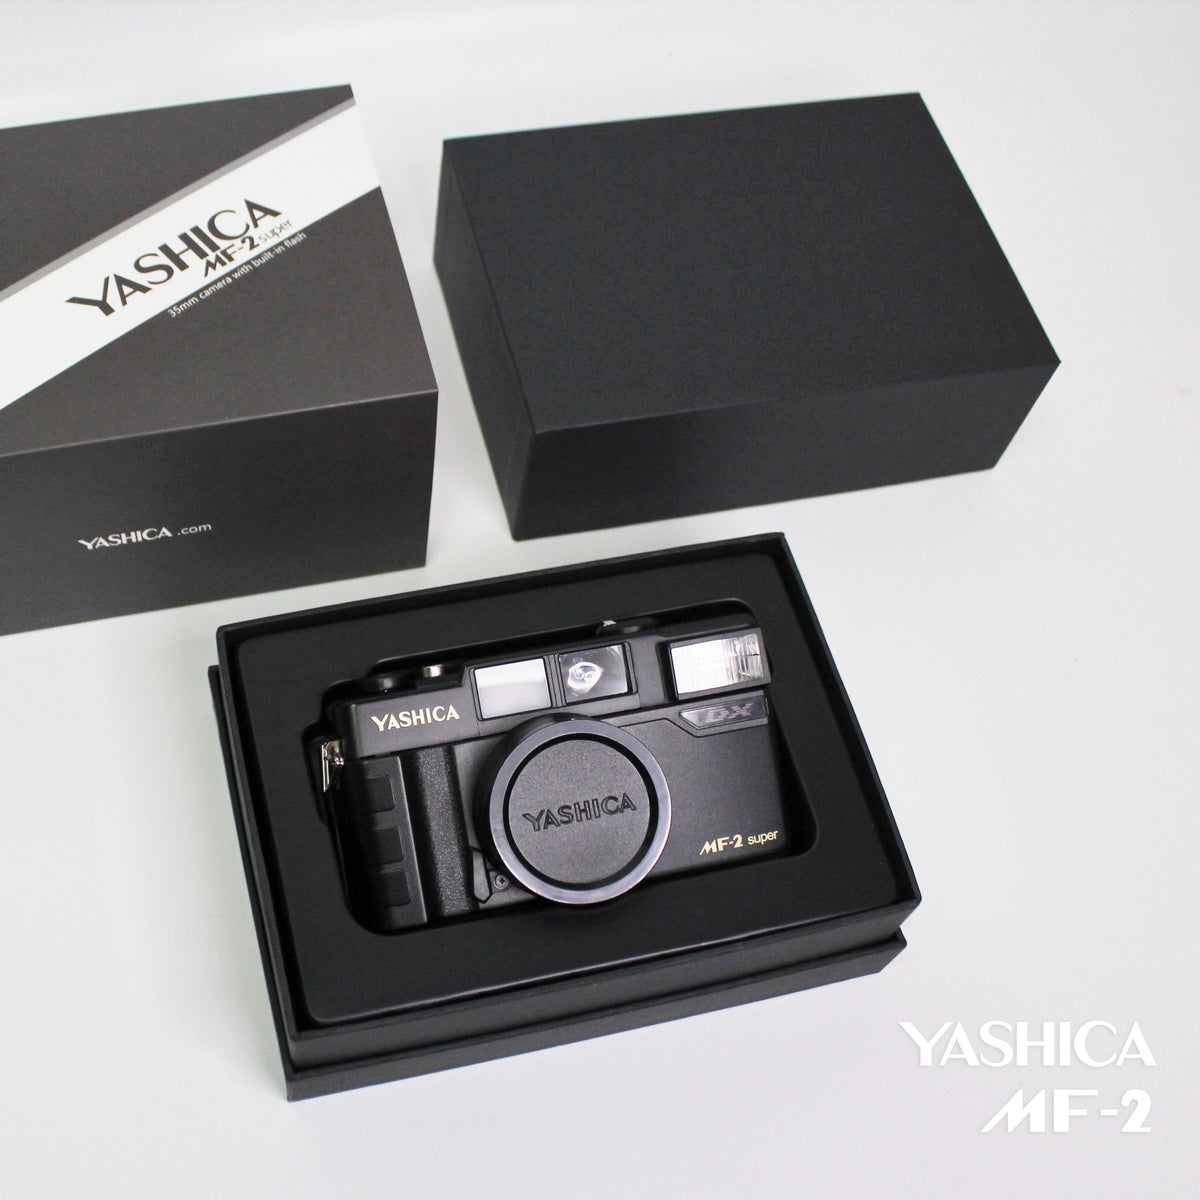 YASHICA MF-2 |全新菲林相機| 一年原廠保養| 禮盒包裝| CoolC 